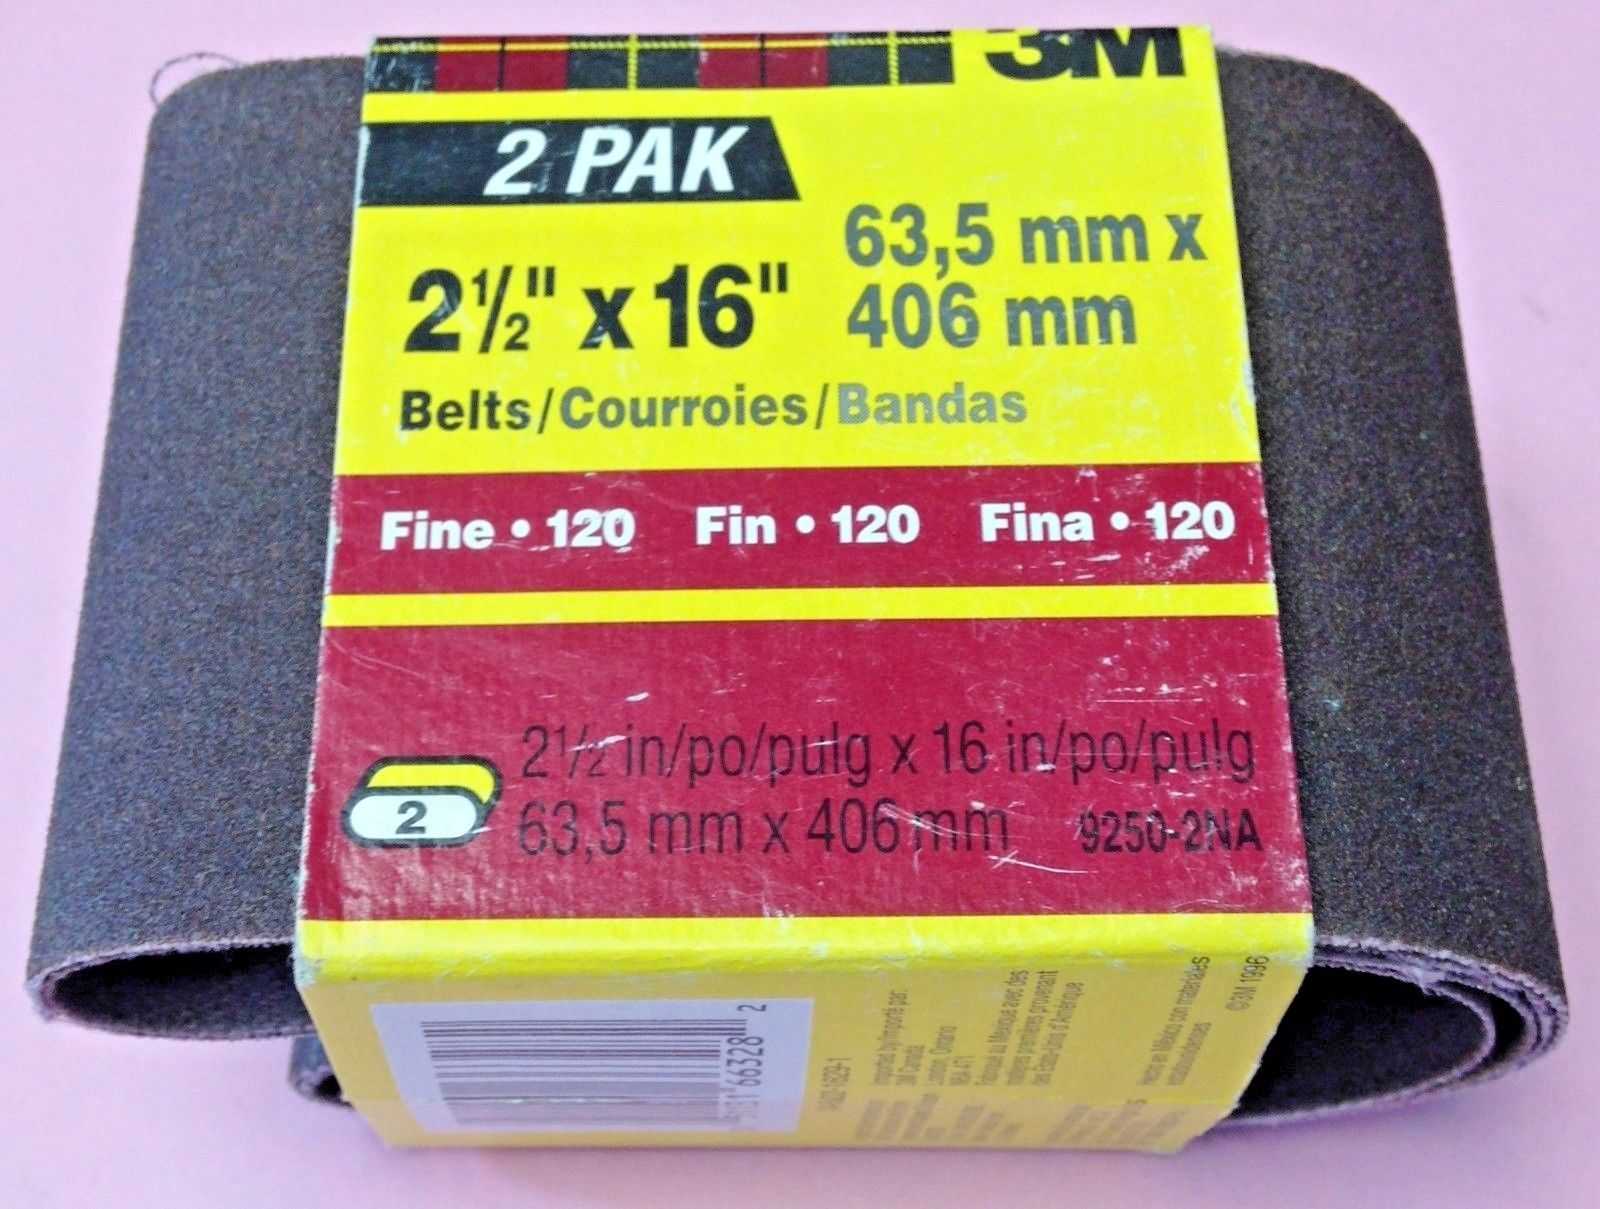 3M 9250-2NA 2-1/2" x 16" Fine 120 Grit Sanding Belts (2 Pack)